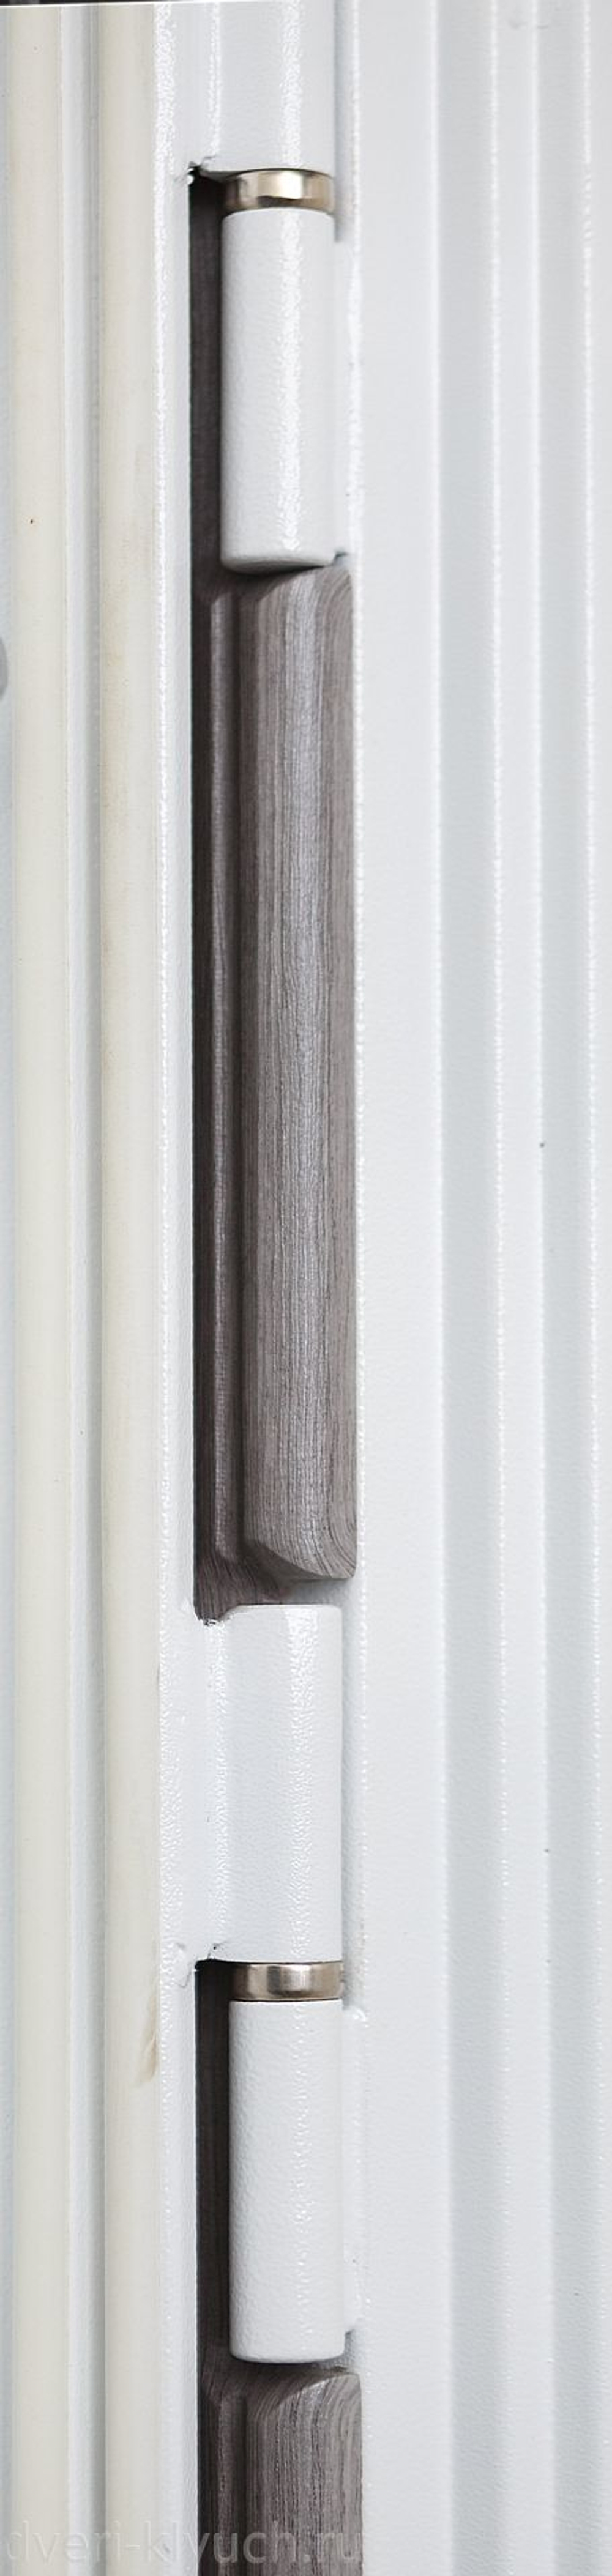 Входная металлическая дверь Сударь Diva МД-42 М9 Белая матовая,без текстуры(белая коробка) 3К с шумоизоляцией